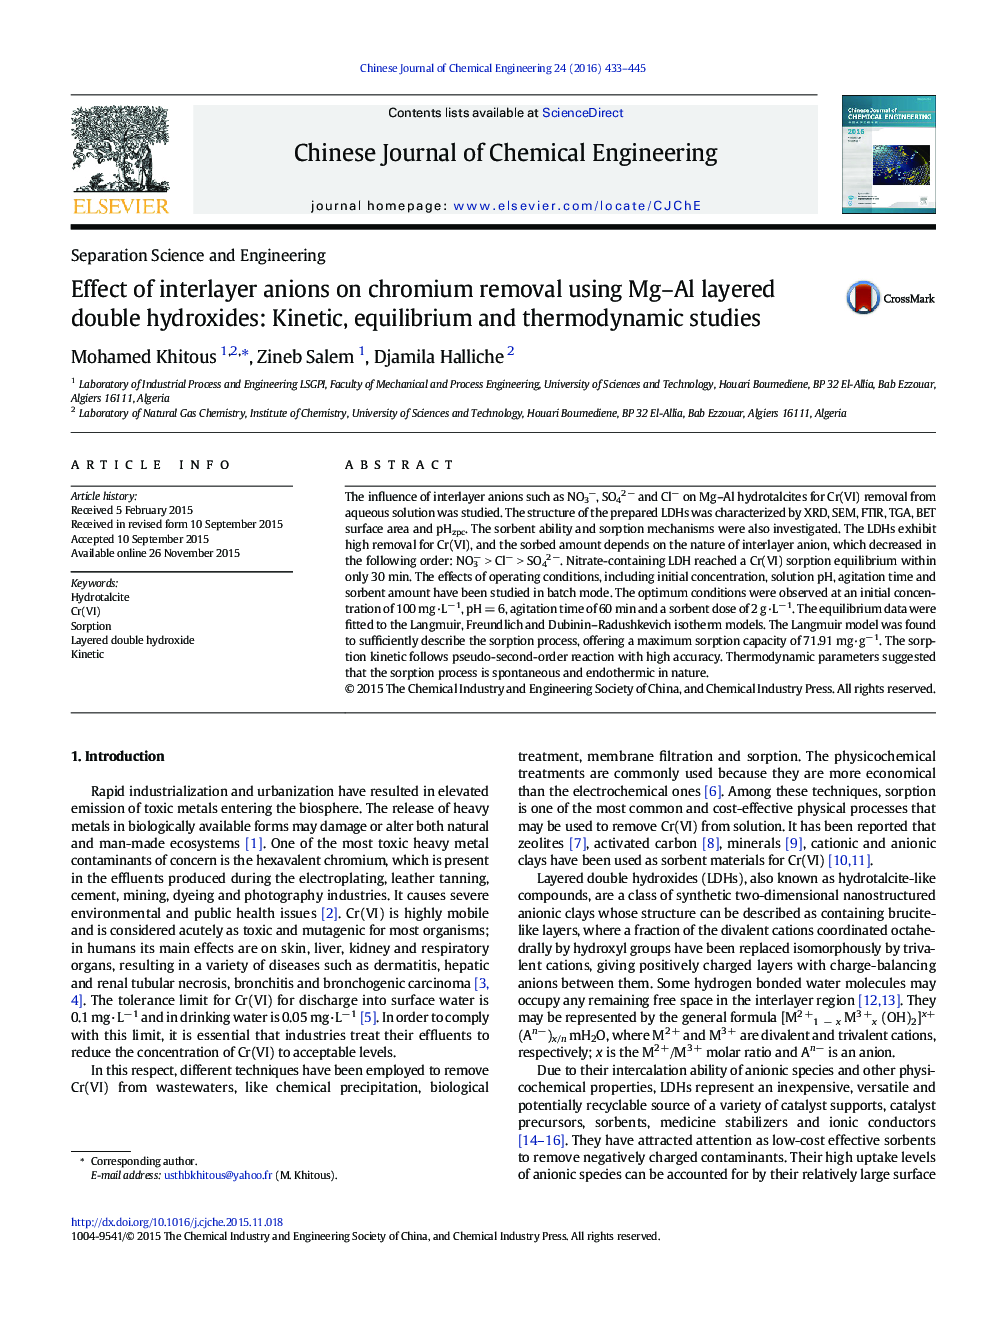 اثر آنیون های بین لایه بر روی حذف کروم با استفاده از هیدروکسیدهای دو لایه چندگانه: مطالعات جنبشی، تعادل و ترمودینامیکی 